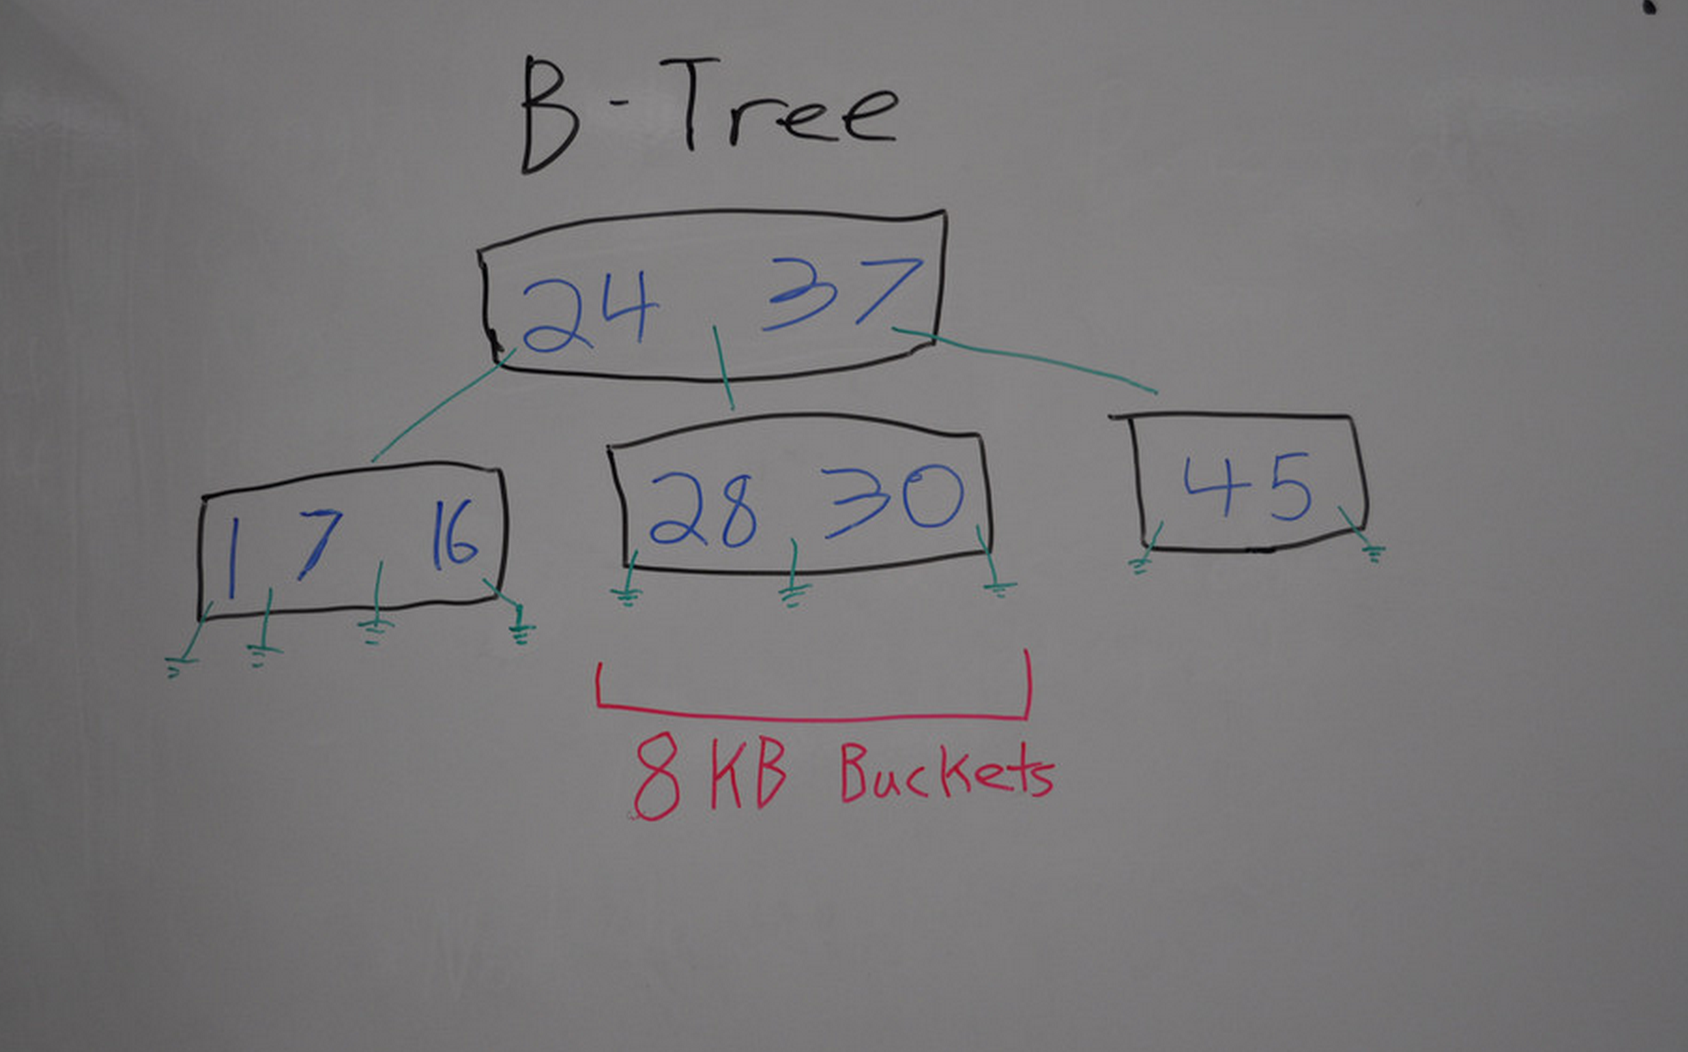 Sample B-Tree